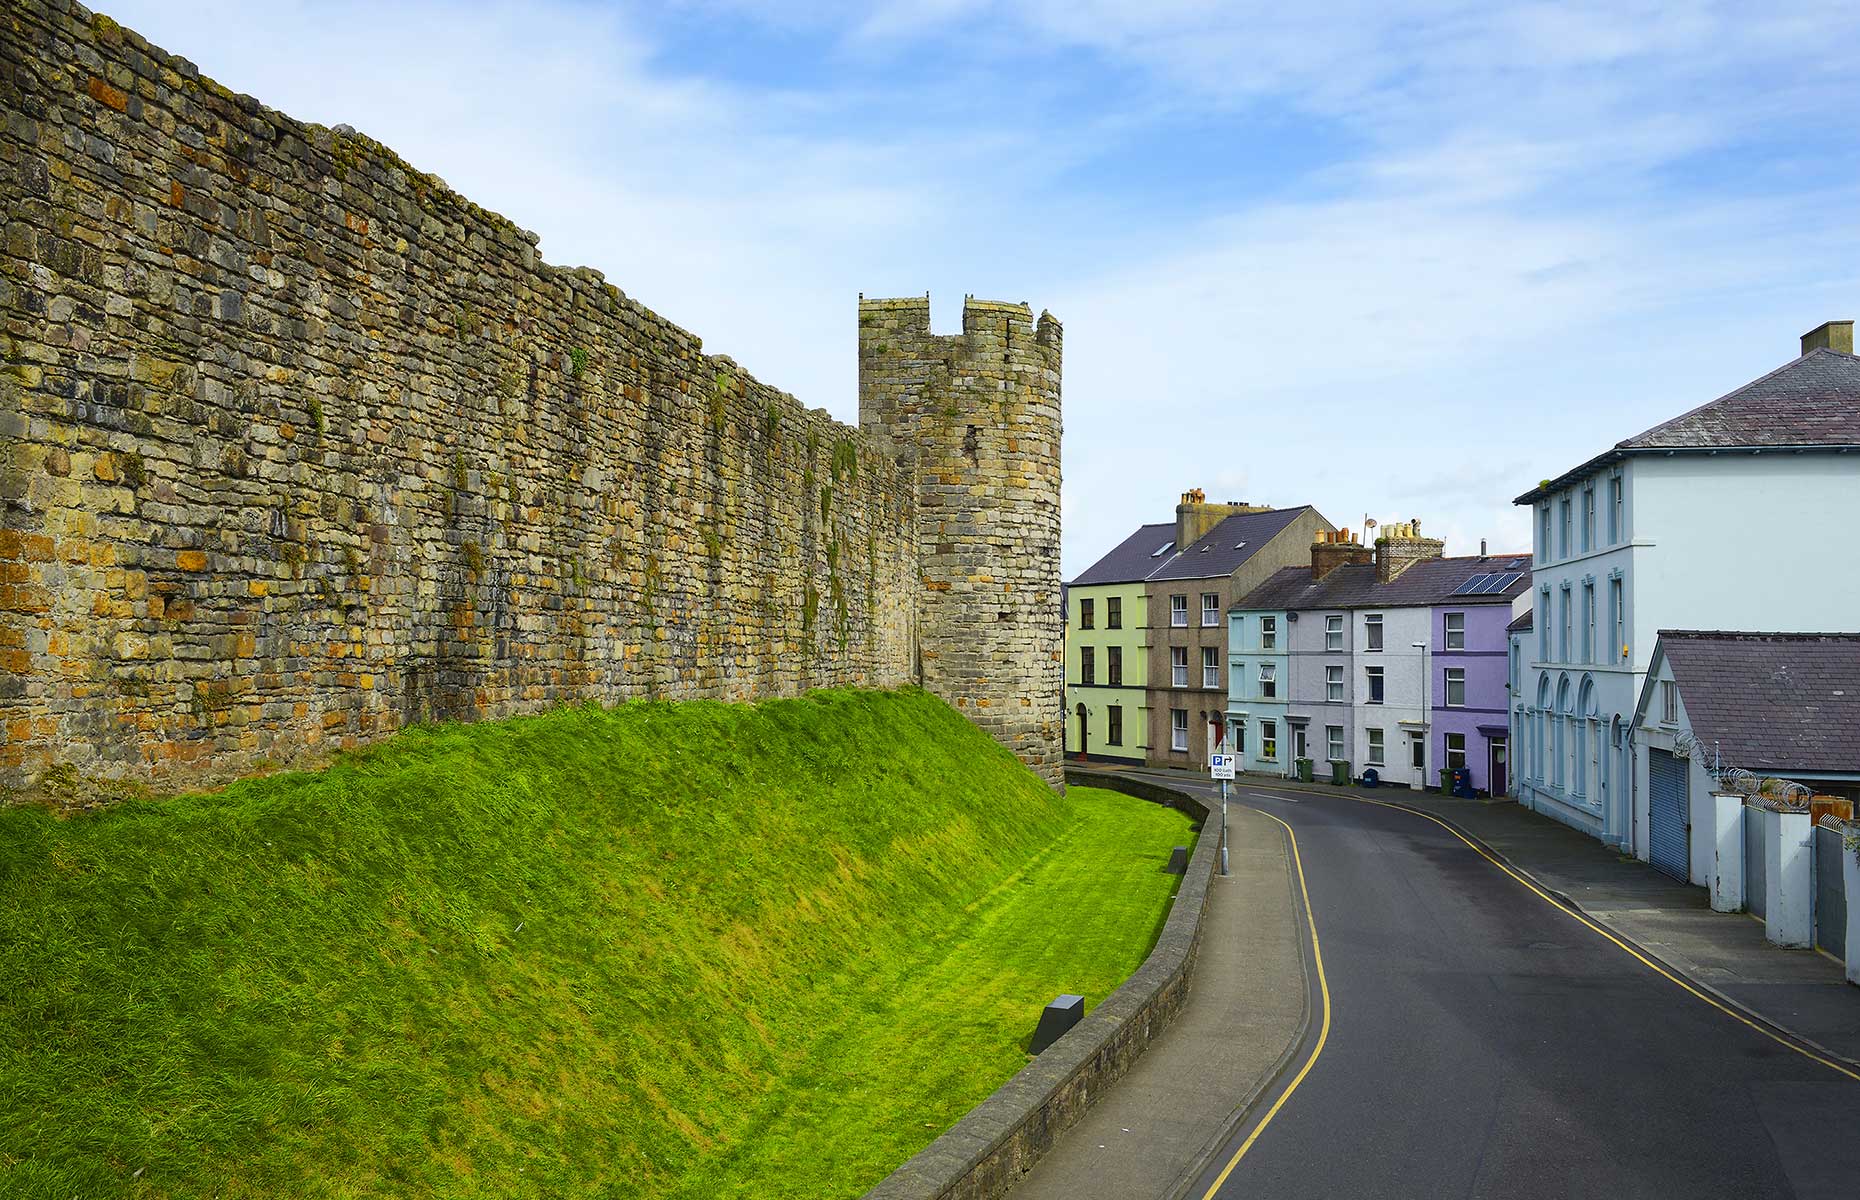 Caernarfon walls, in the north Wales town